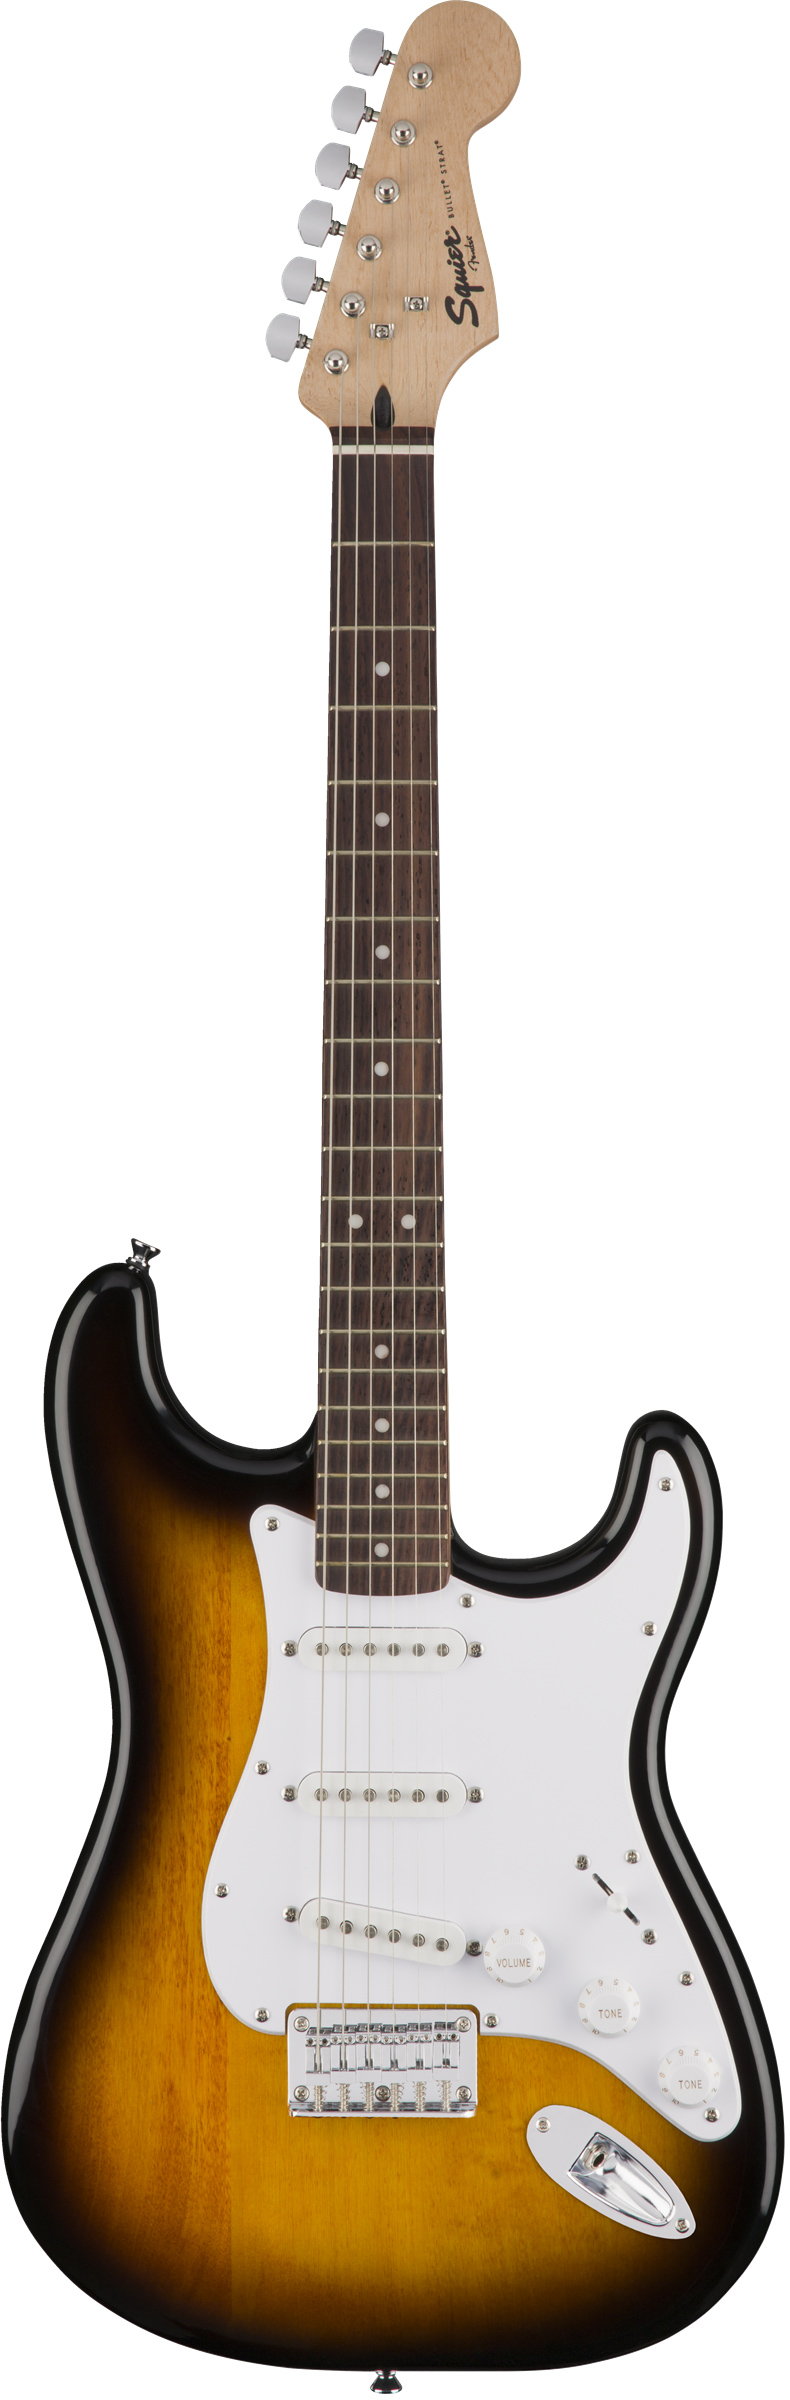 Fender Squier Bullet Stratocaster HT - Brown Sunburst